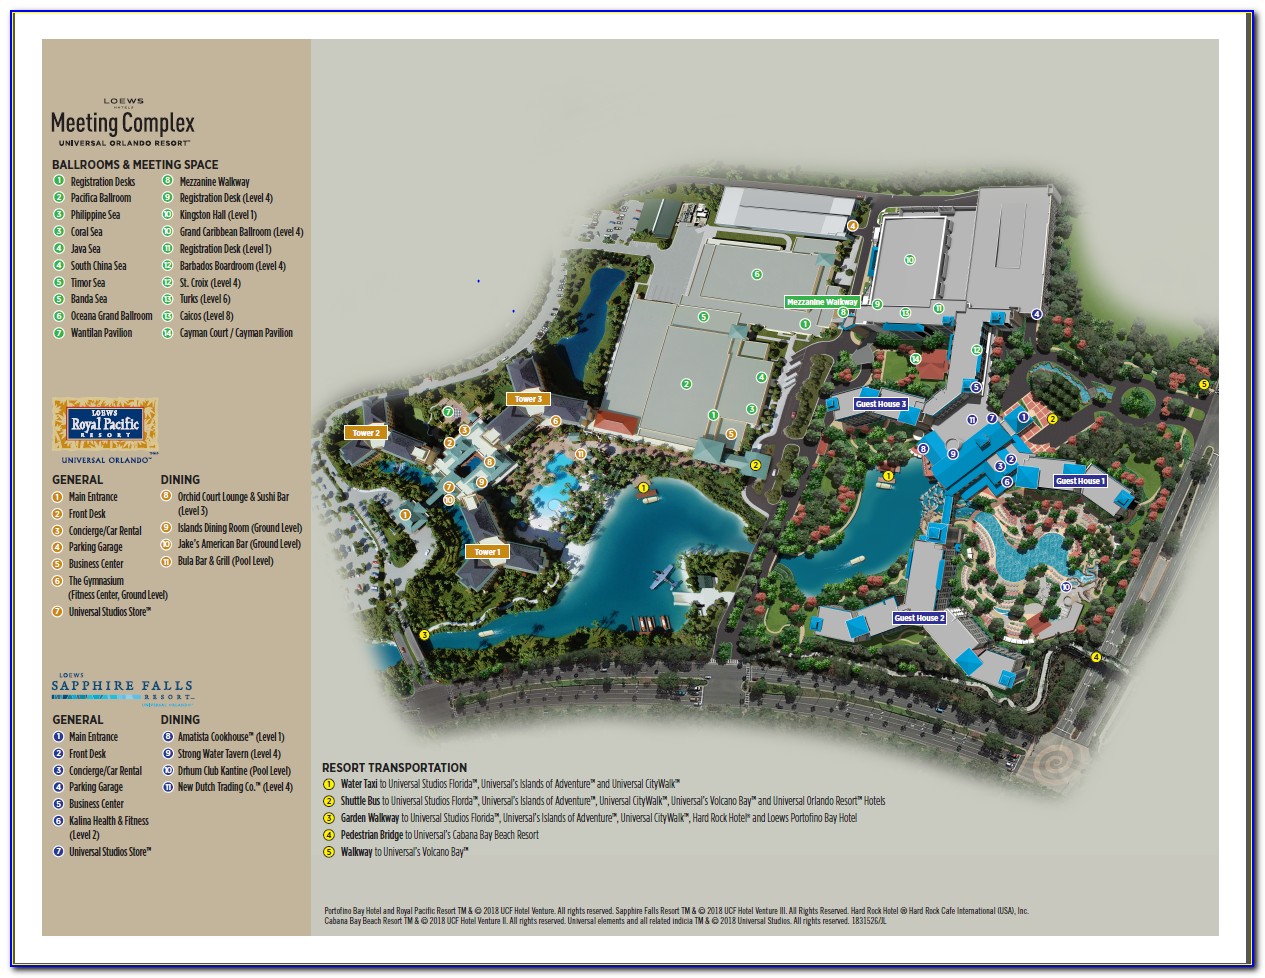 Loews Royal Pacific Resort Map Pdf